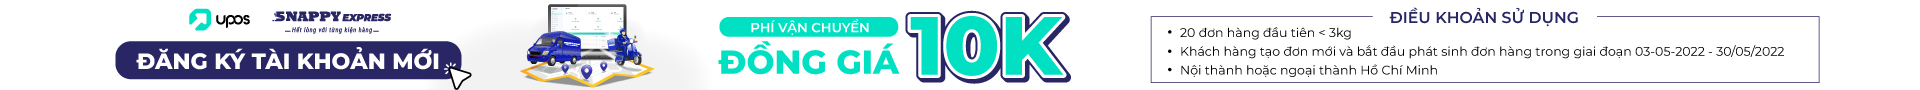 Upos logo